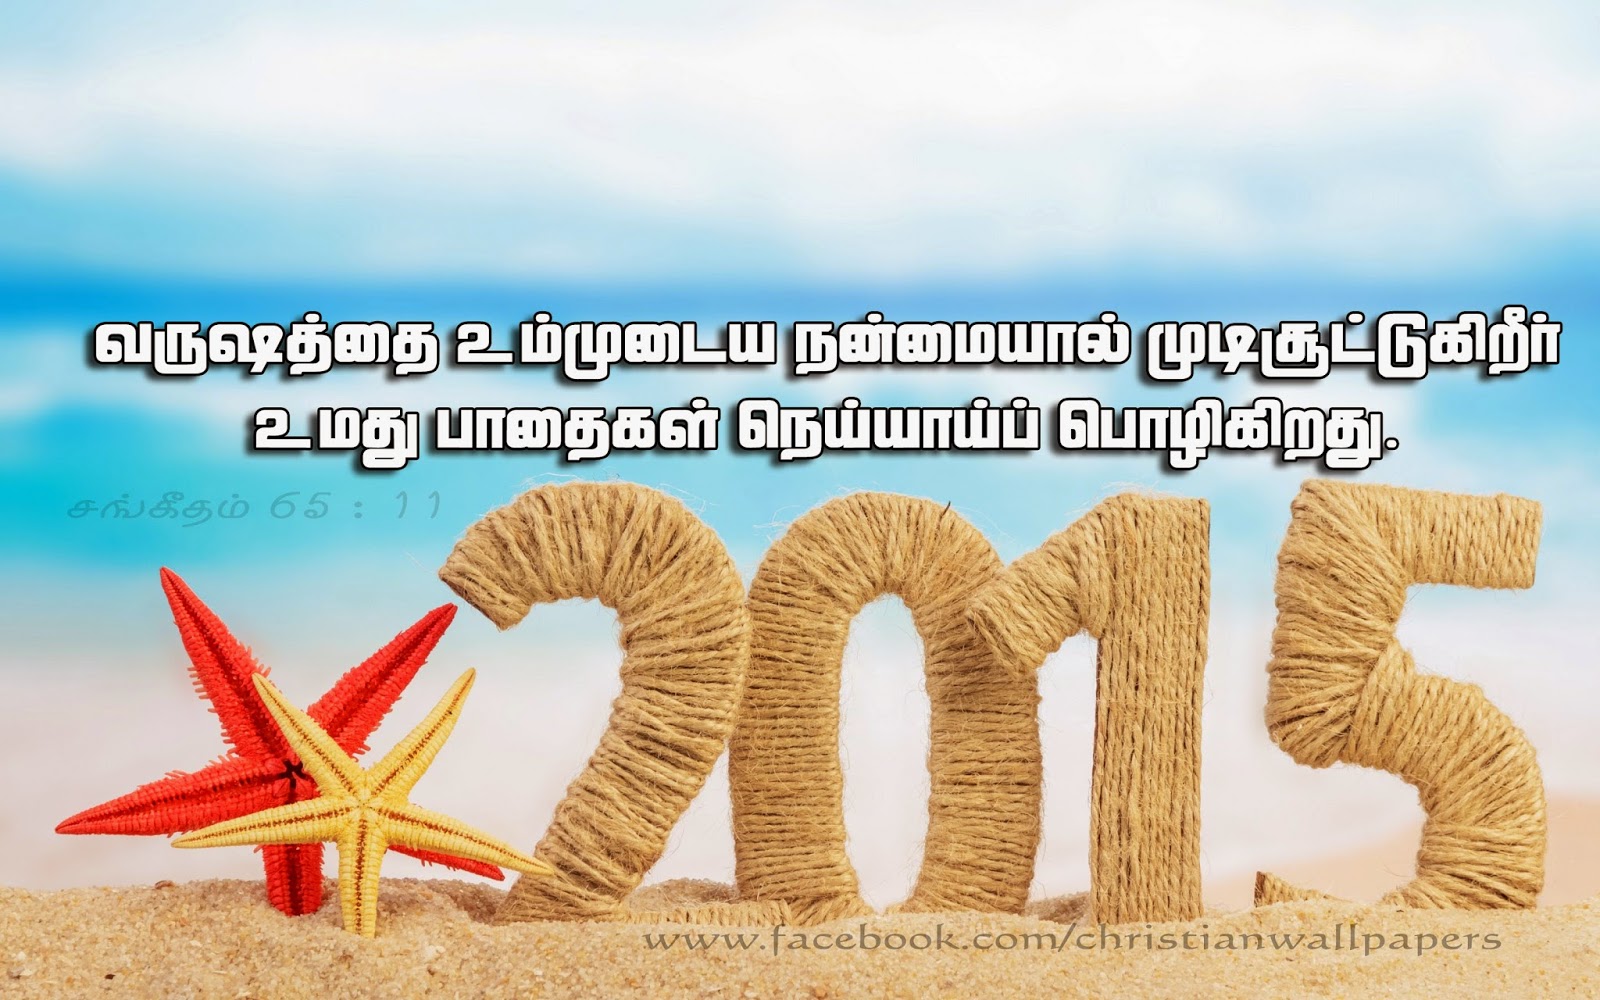 carta da parati tamil di nuovo anno,testo,font,contento